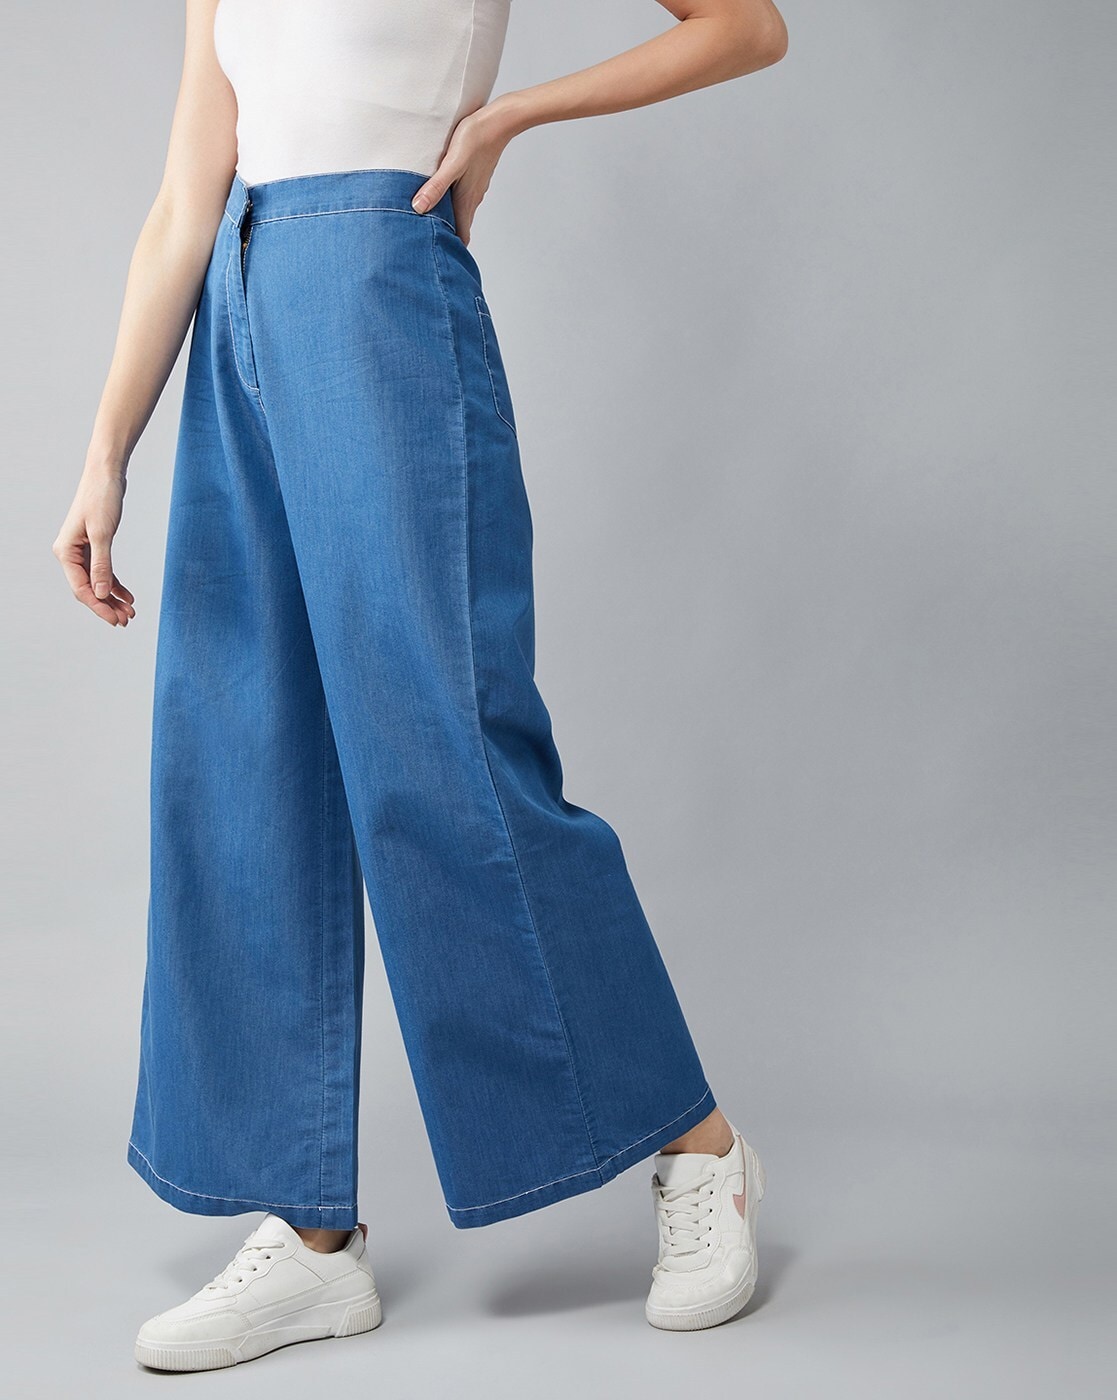 Plus Size Plus Size Sky Blue Cotton Linen Pants Online in India | Amydus